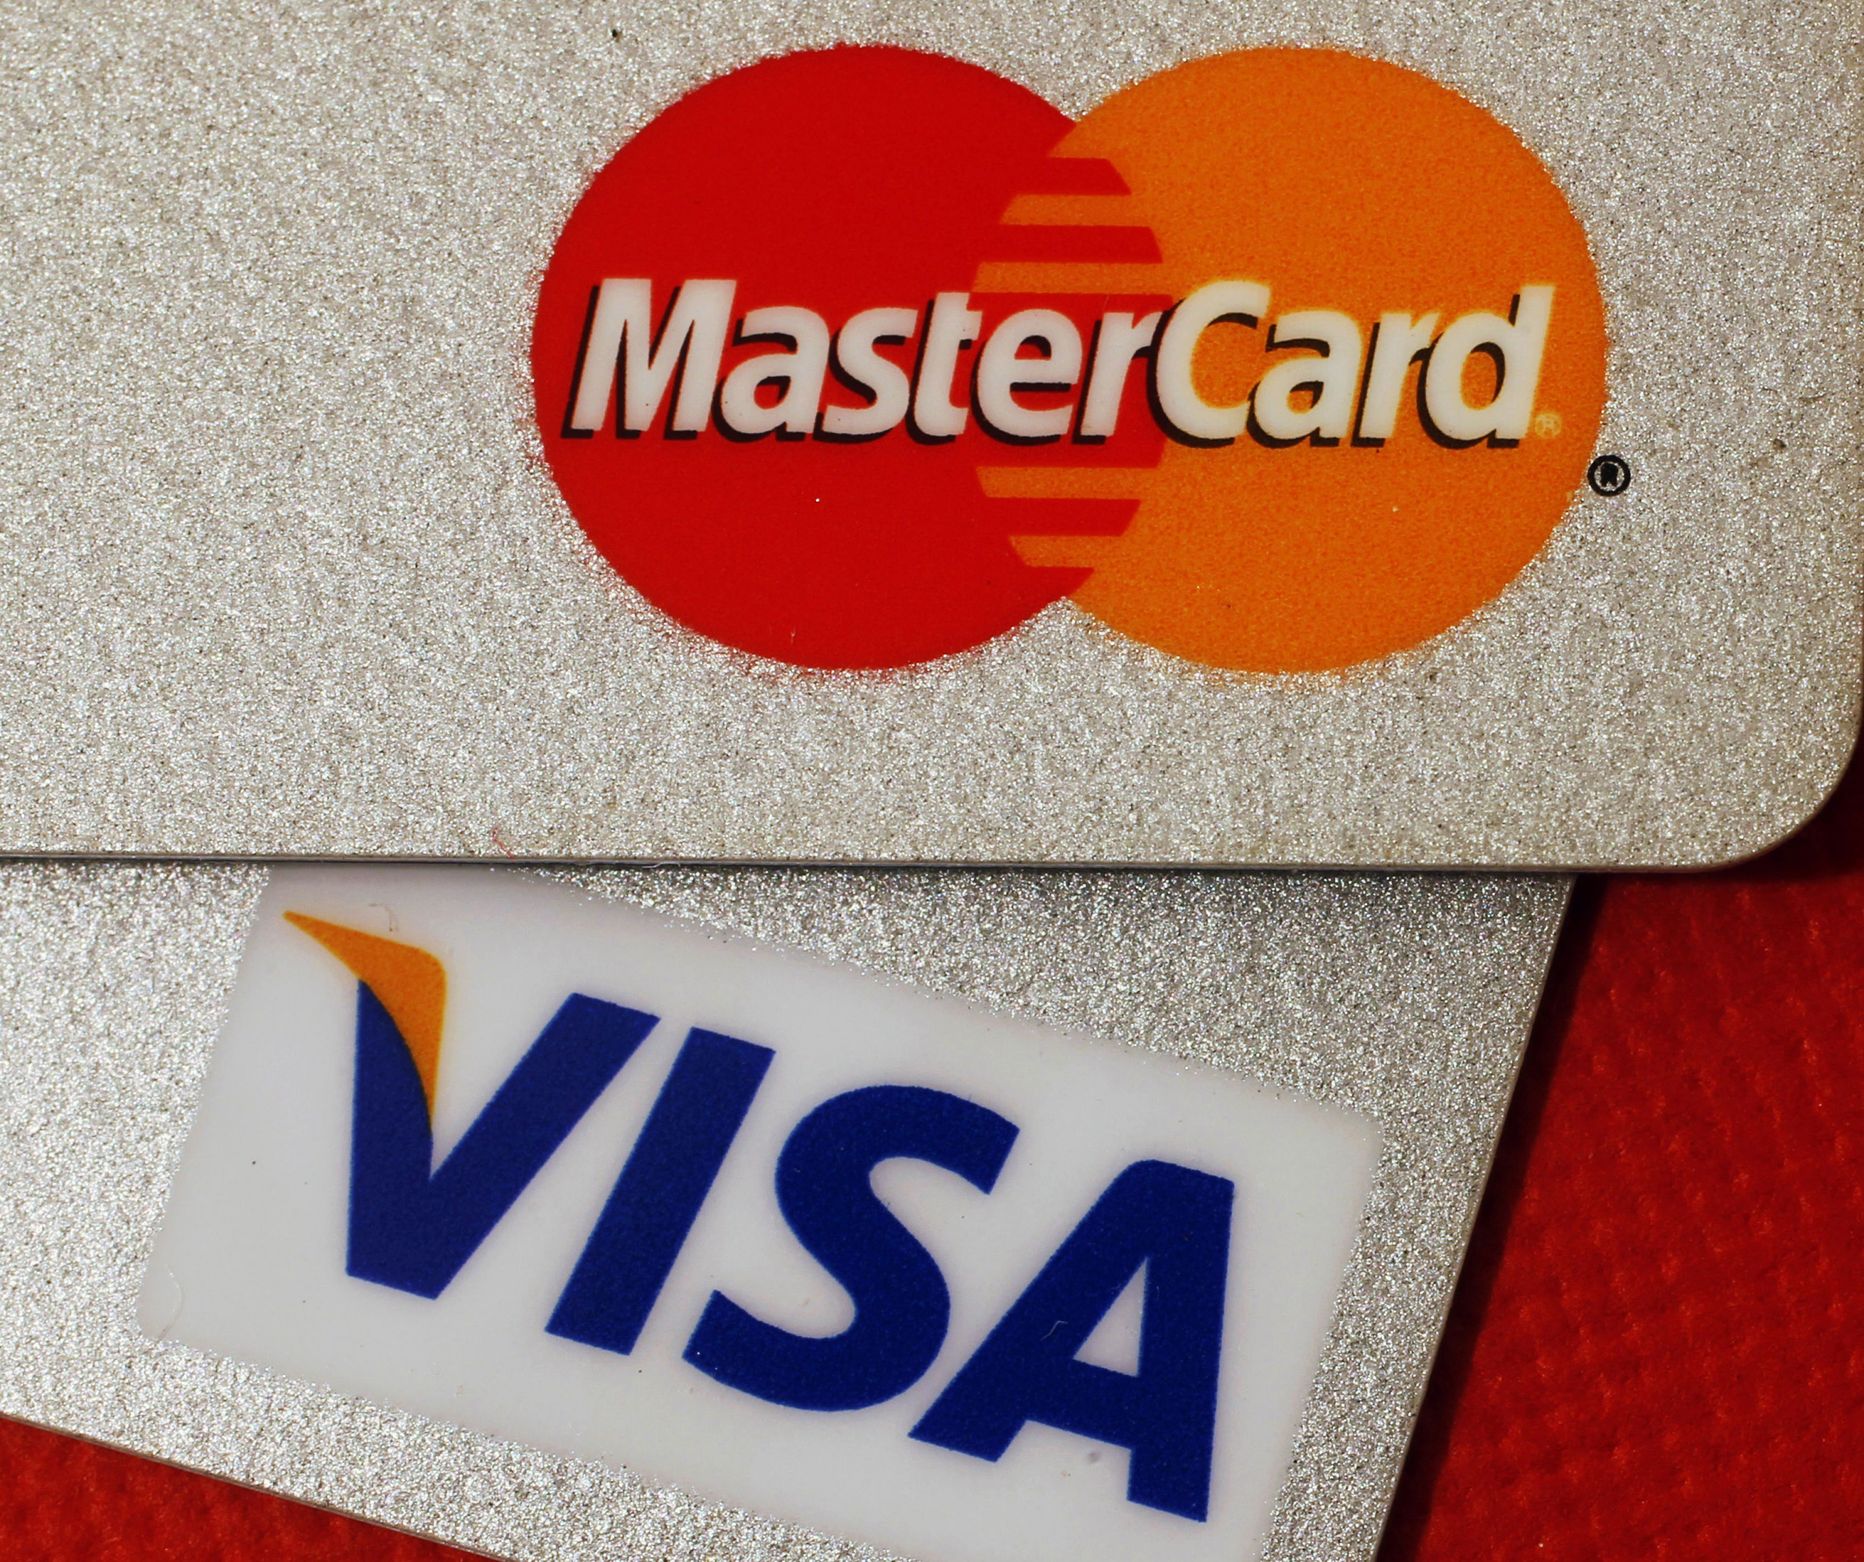 Visa ja MasterCard kontrollivad kaardimaksete turgu.